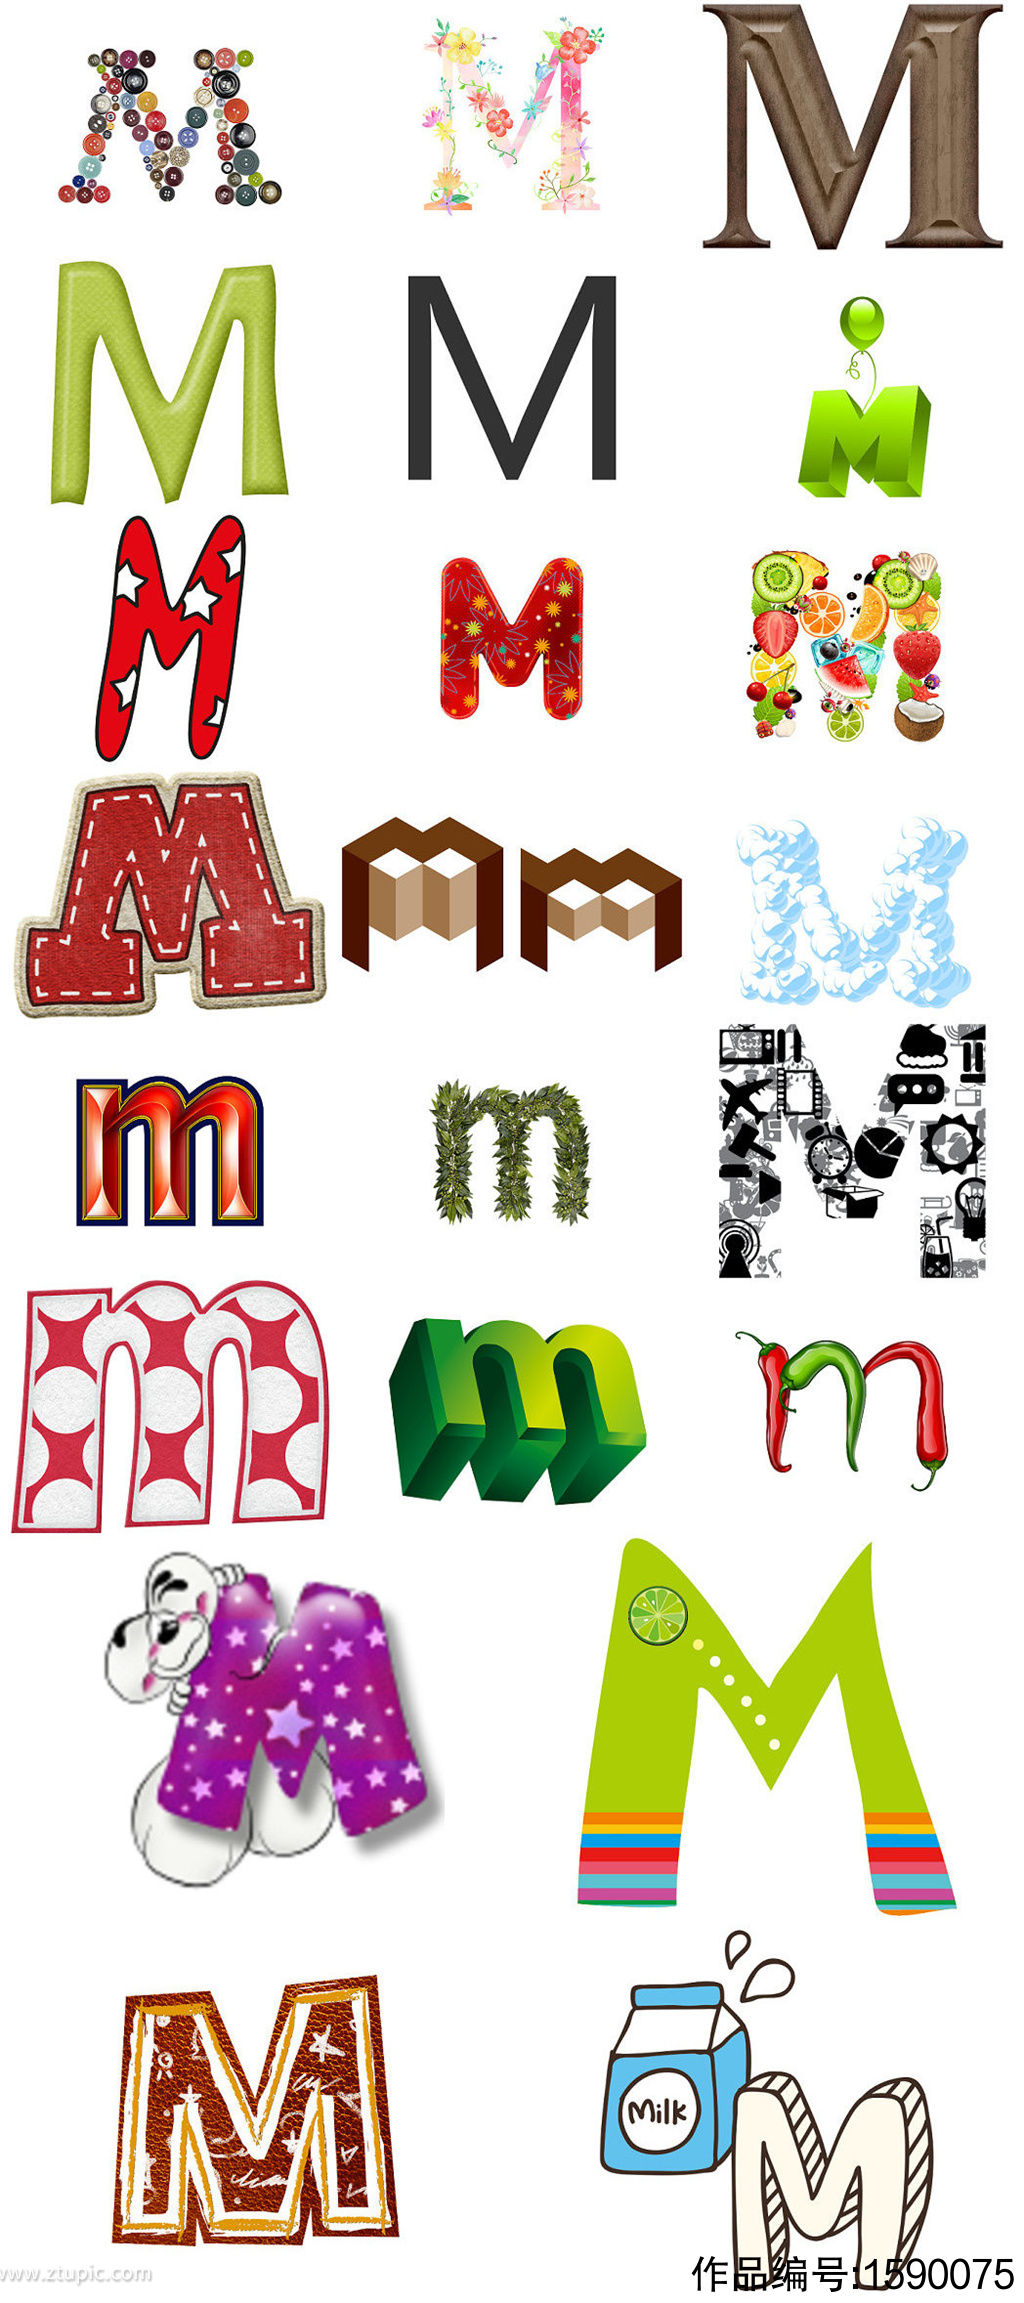 英文字母m形状字体设计模版素材